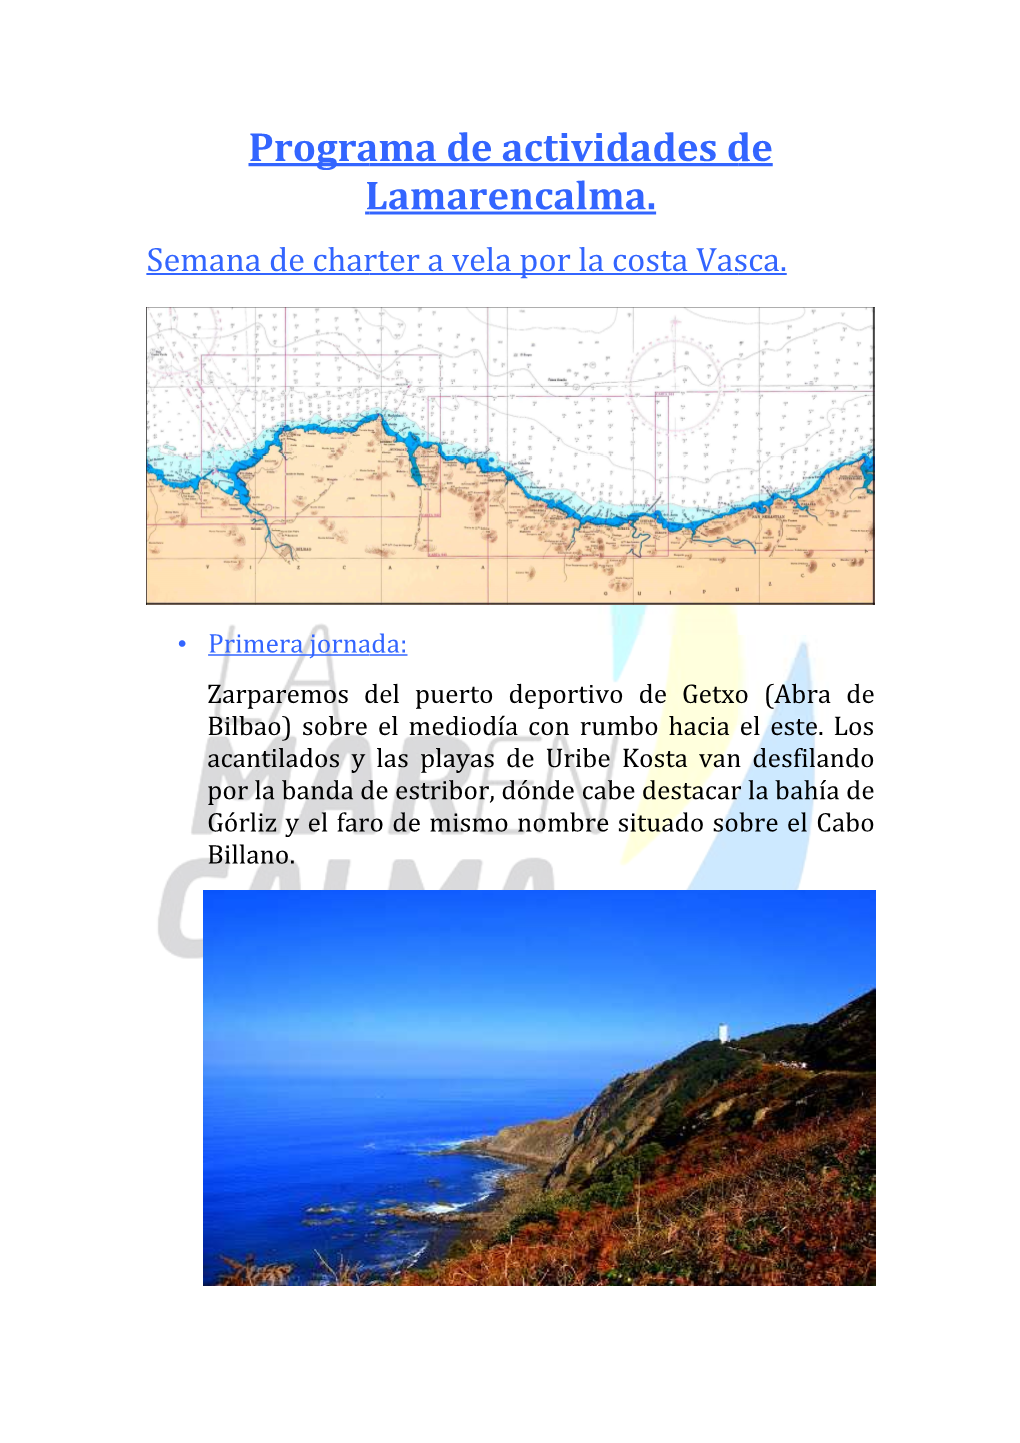 Semana De Charter a Vela Por La Costa Vasca